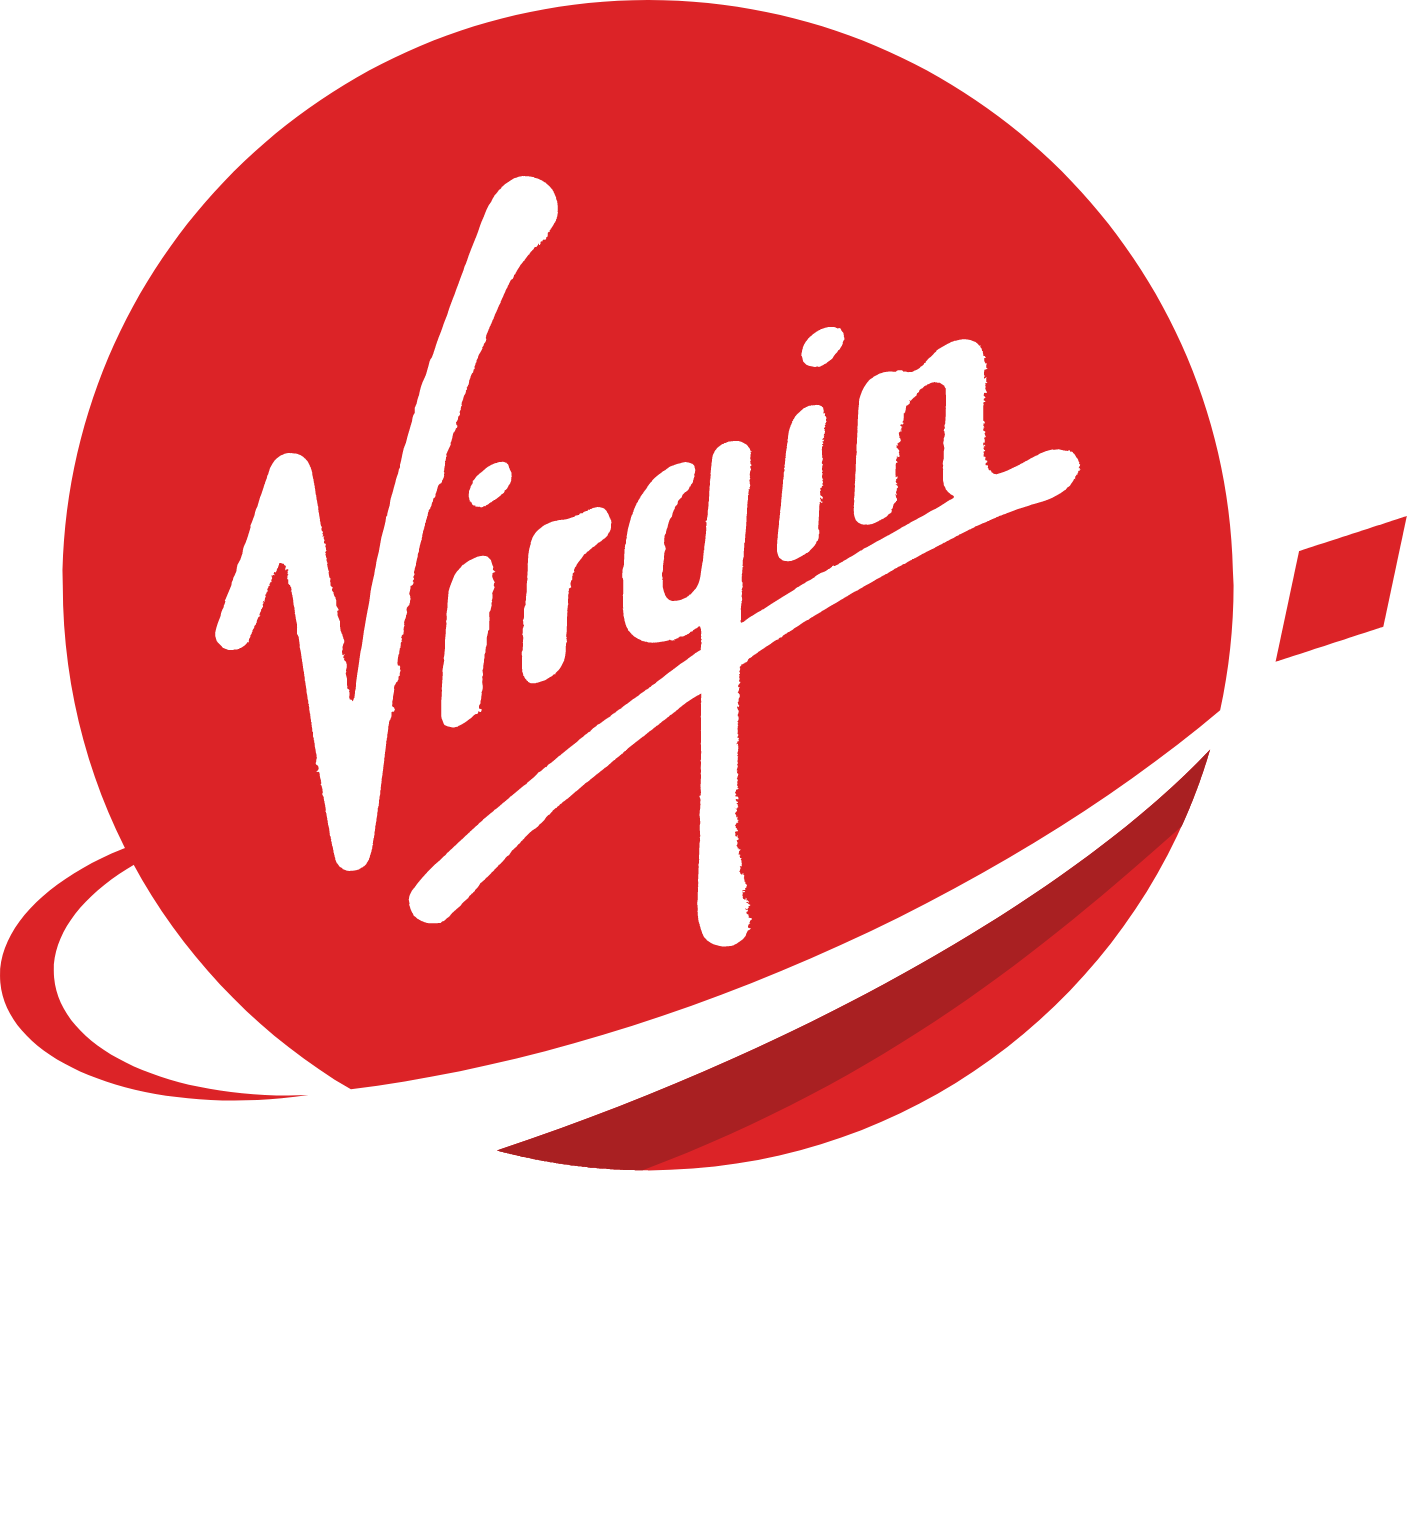 Virgin Orbit Logo groß für dunkle Hintergründe (transparentes PNG)